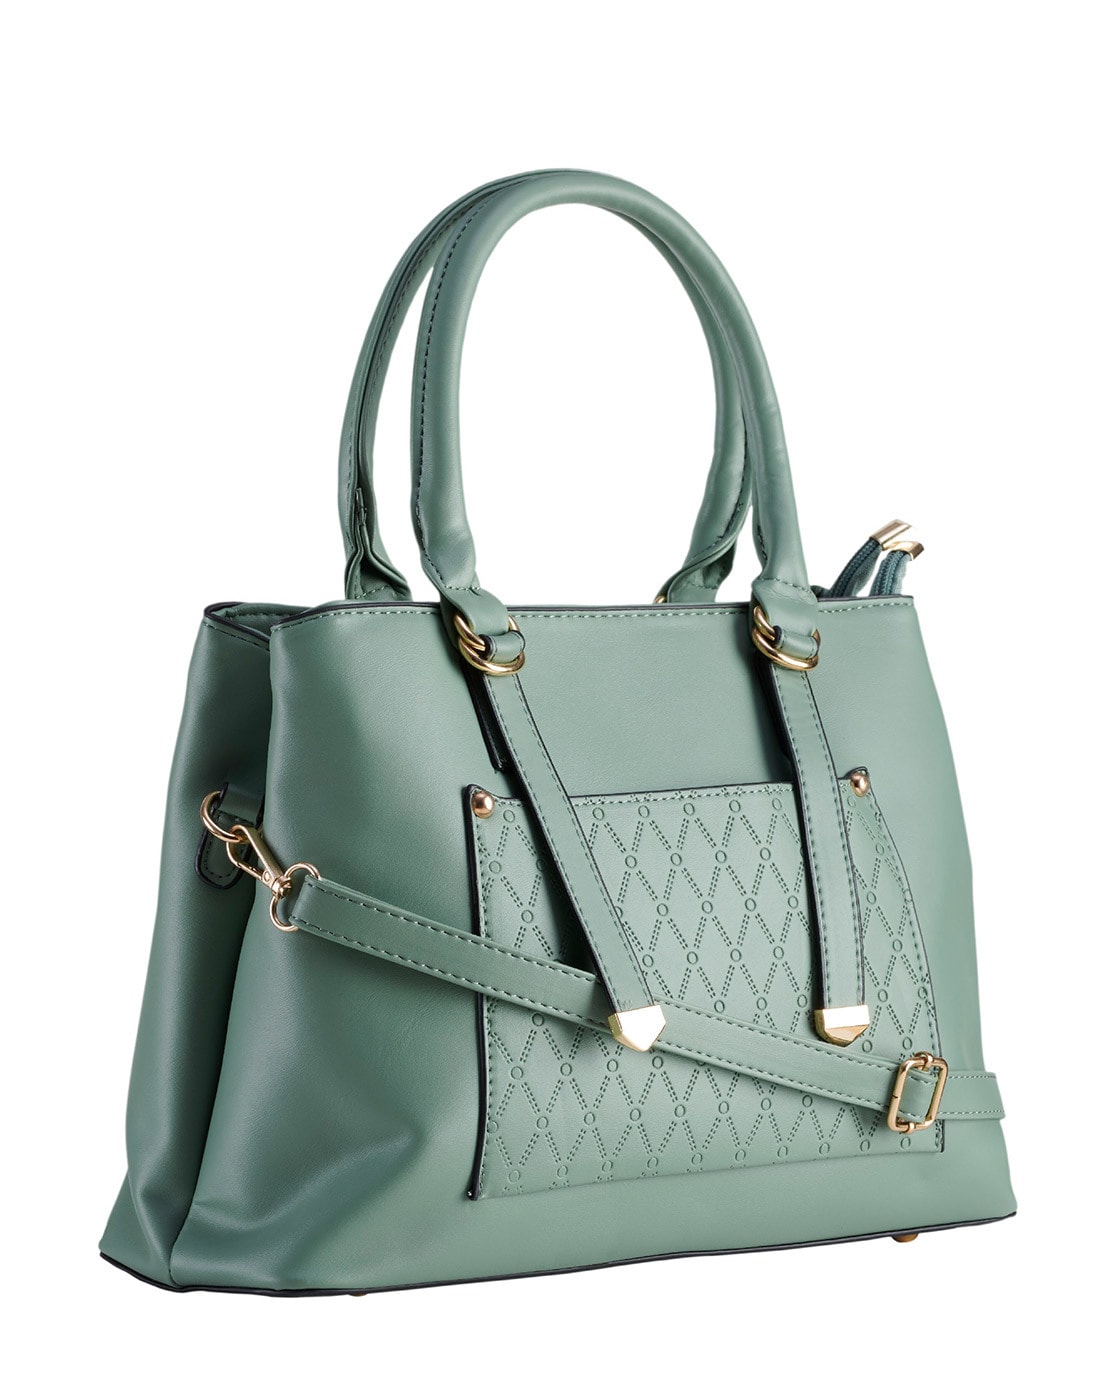 Buy Women Bags Online | lazada.sg